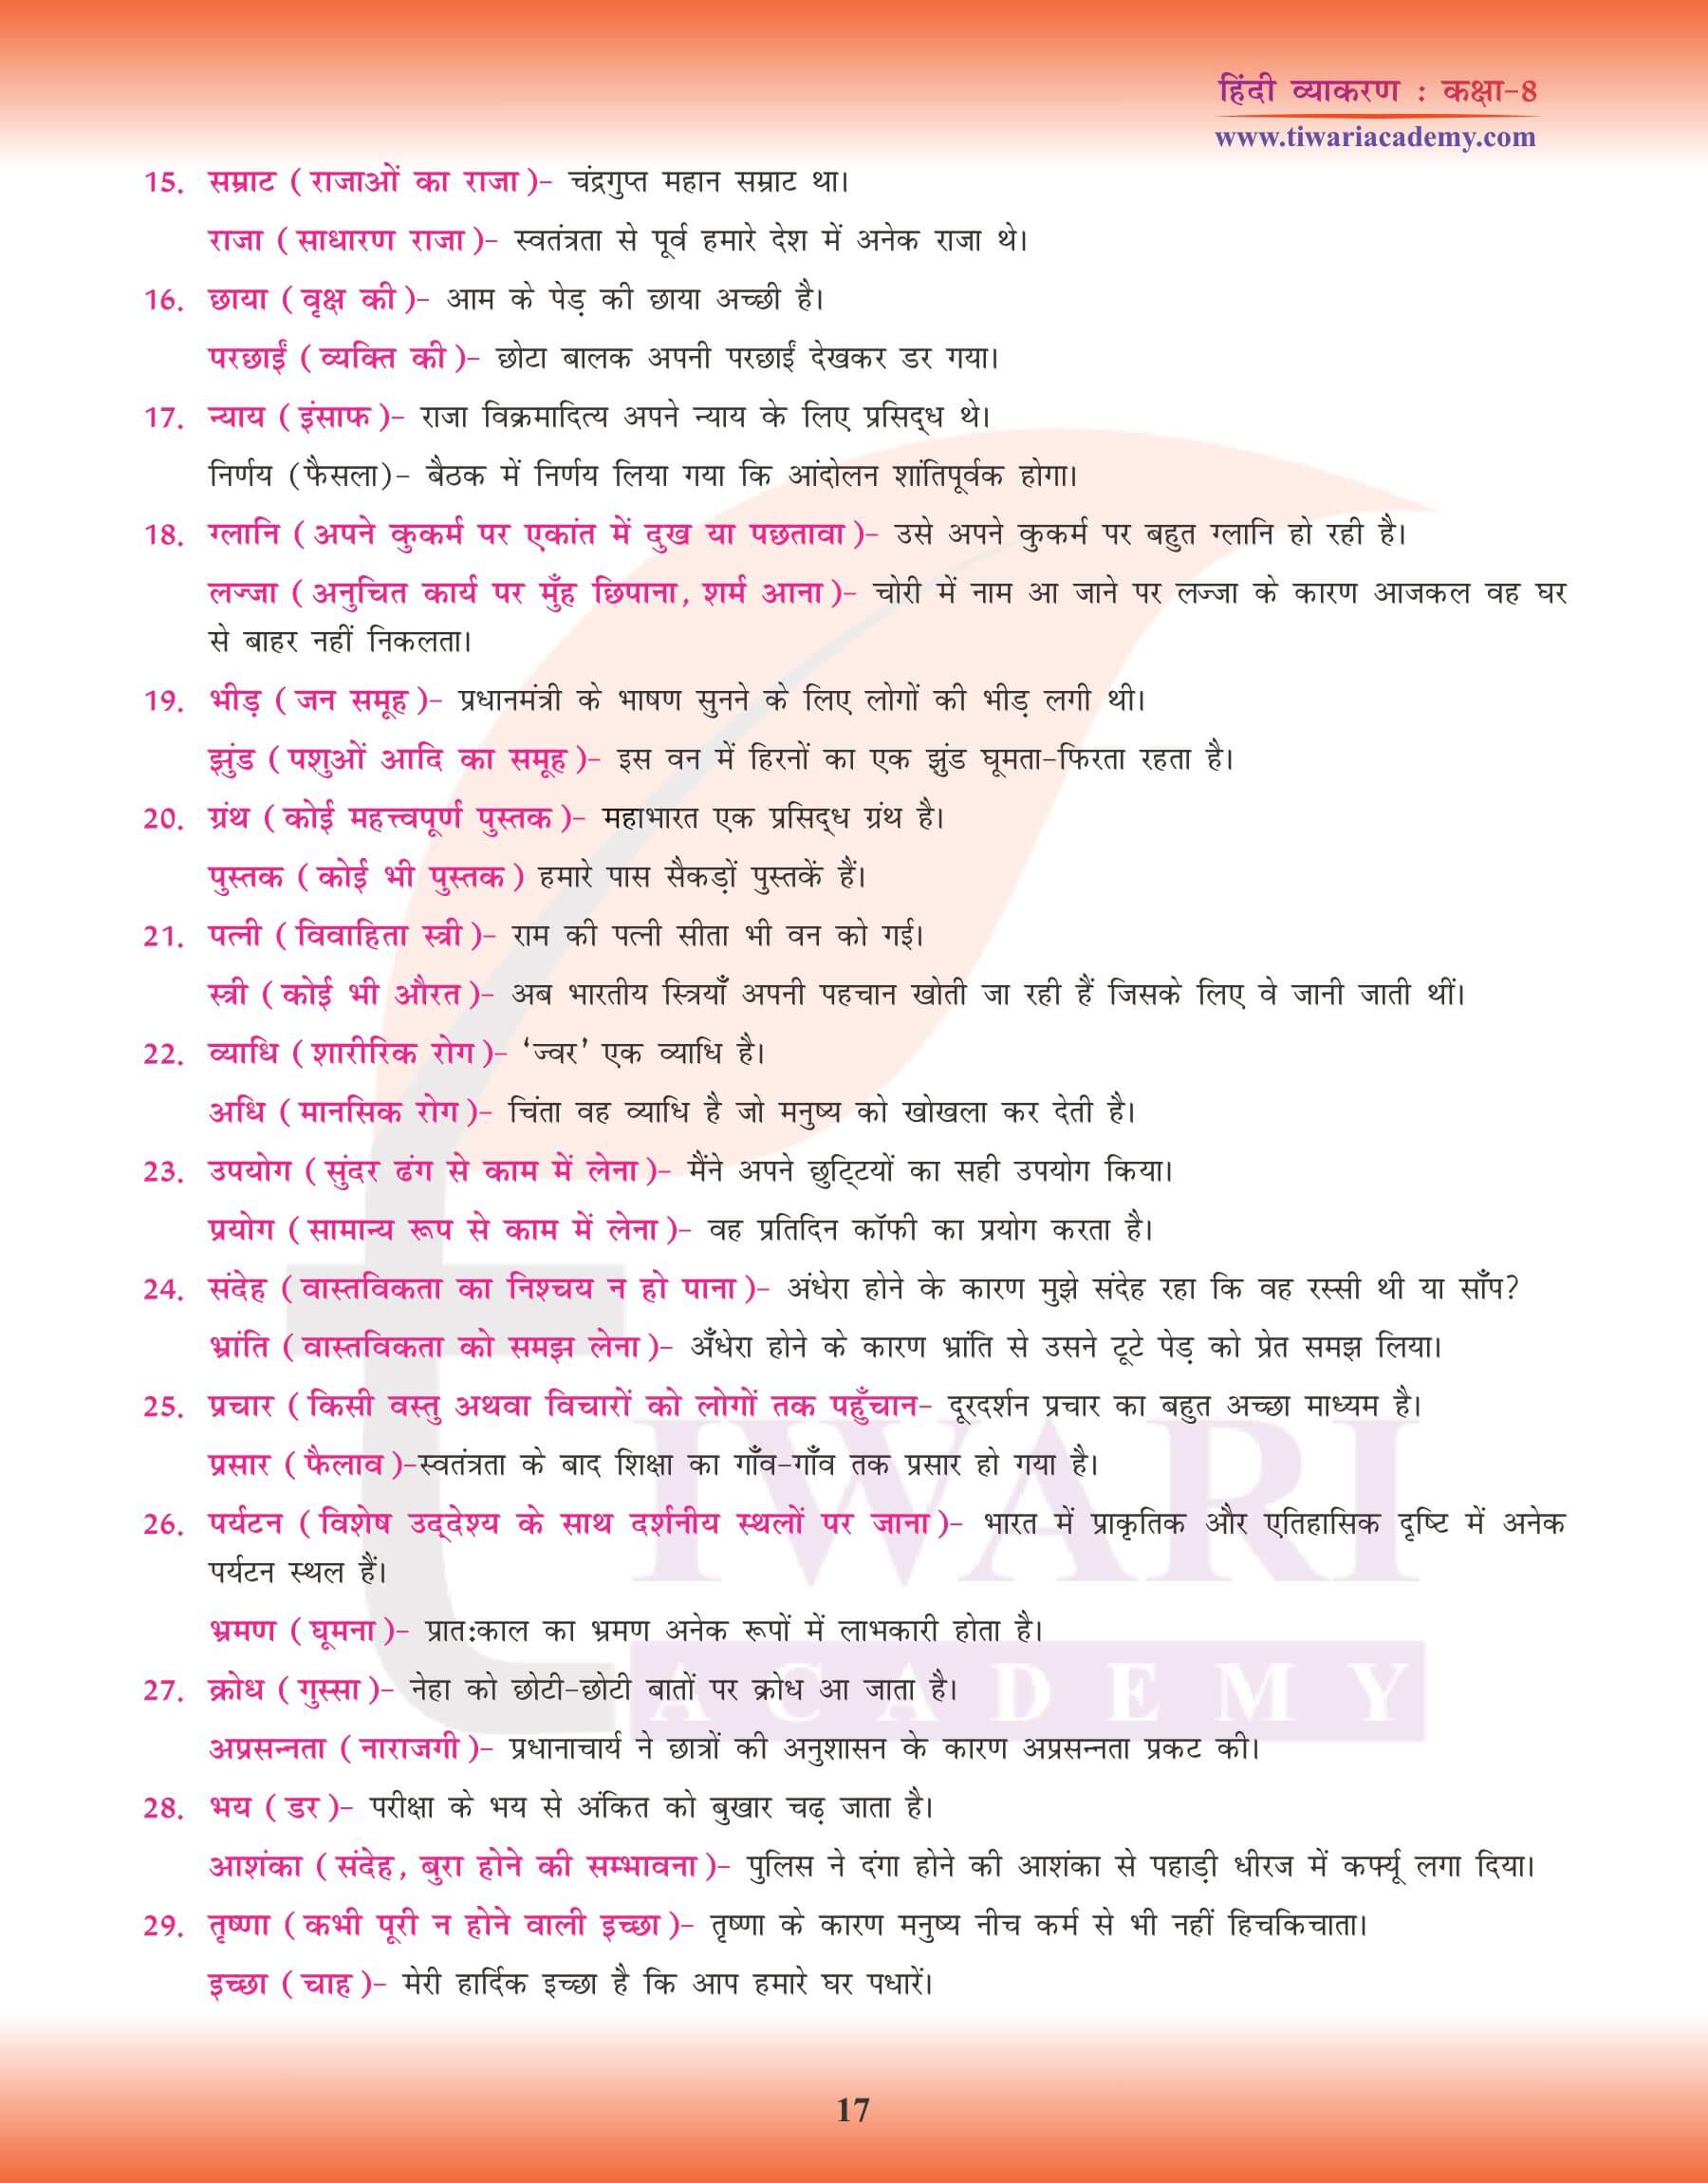 कक्षा 8 हिंदी व्याकरण में भिन्नार्थक शब्द नोट्स